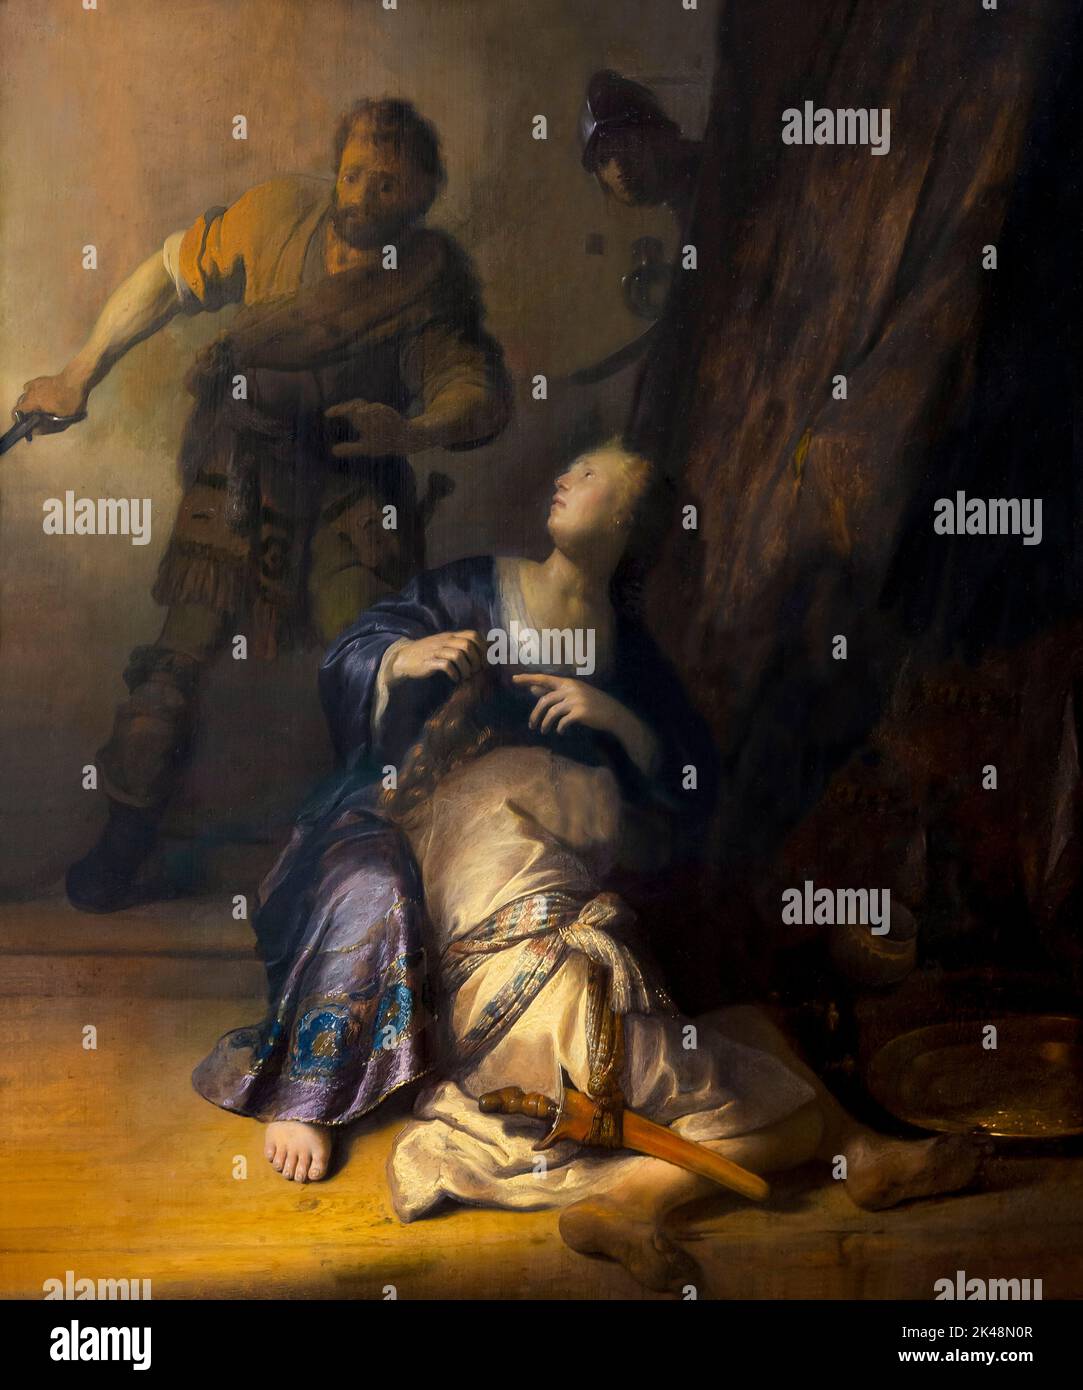 Samson et Delilah, Rembrandt, 1628-1629, Gemaldegalerie, Berlin, Allemagne, Europe Banque D'Images